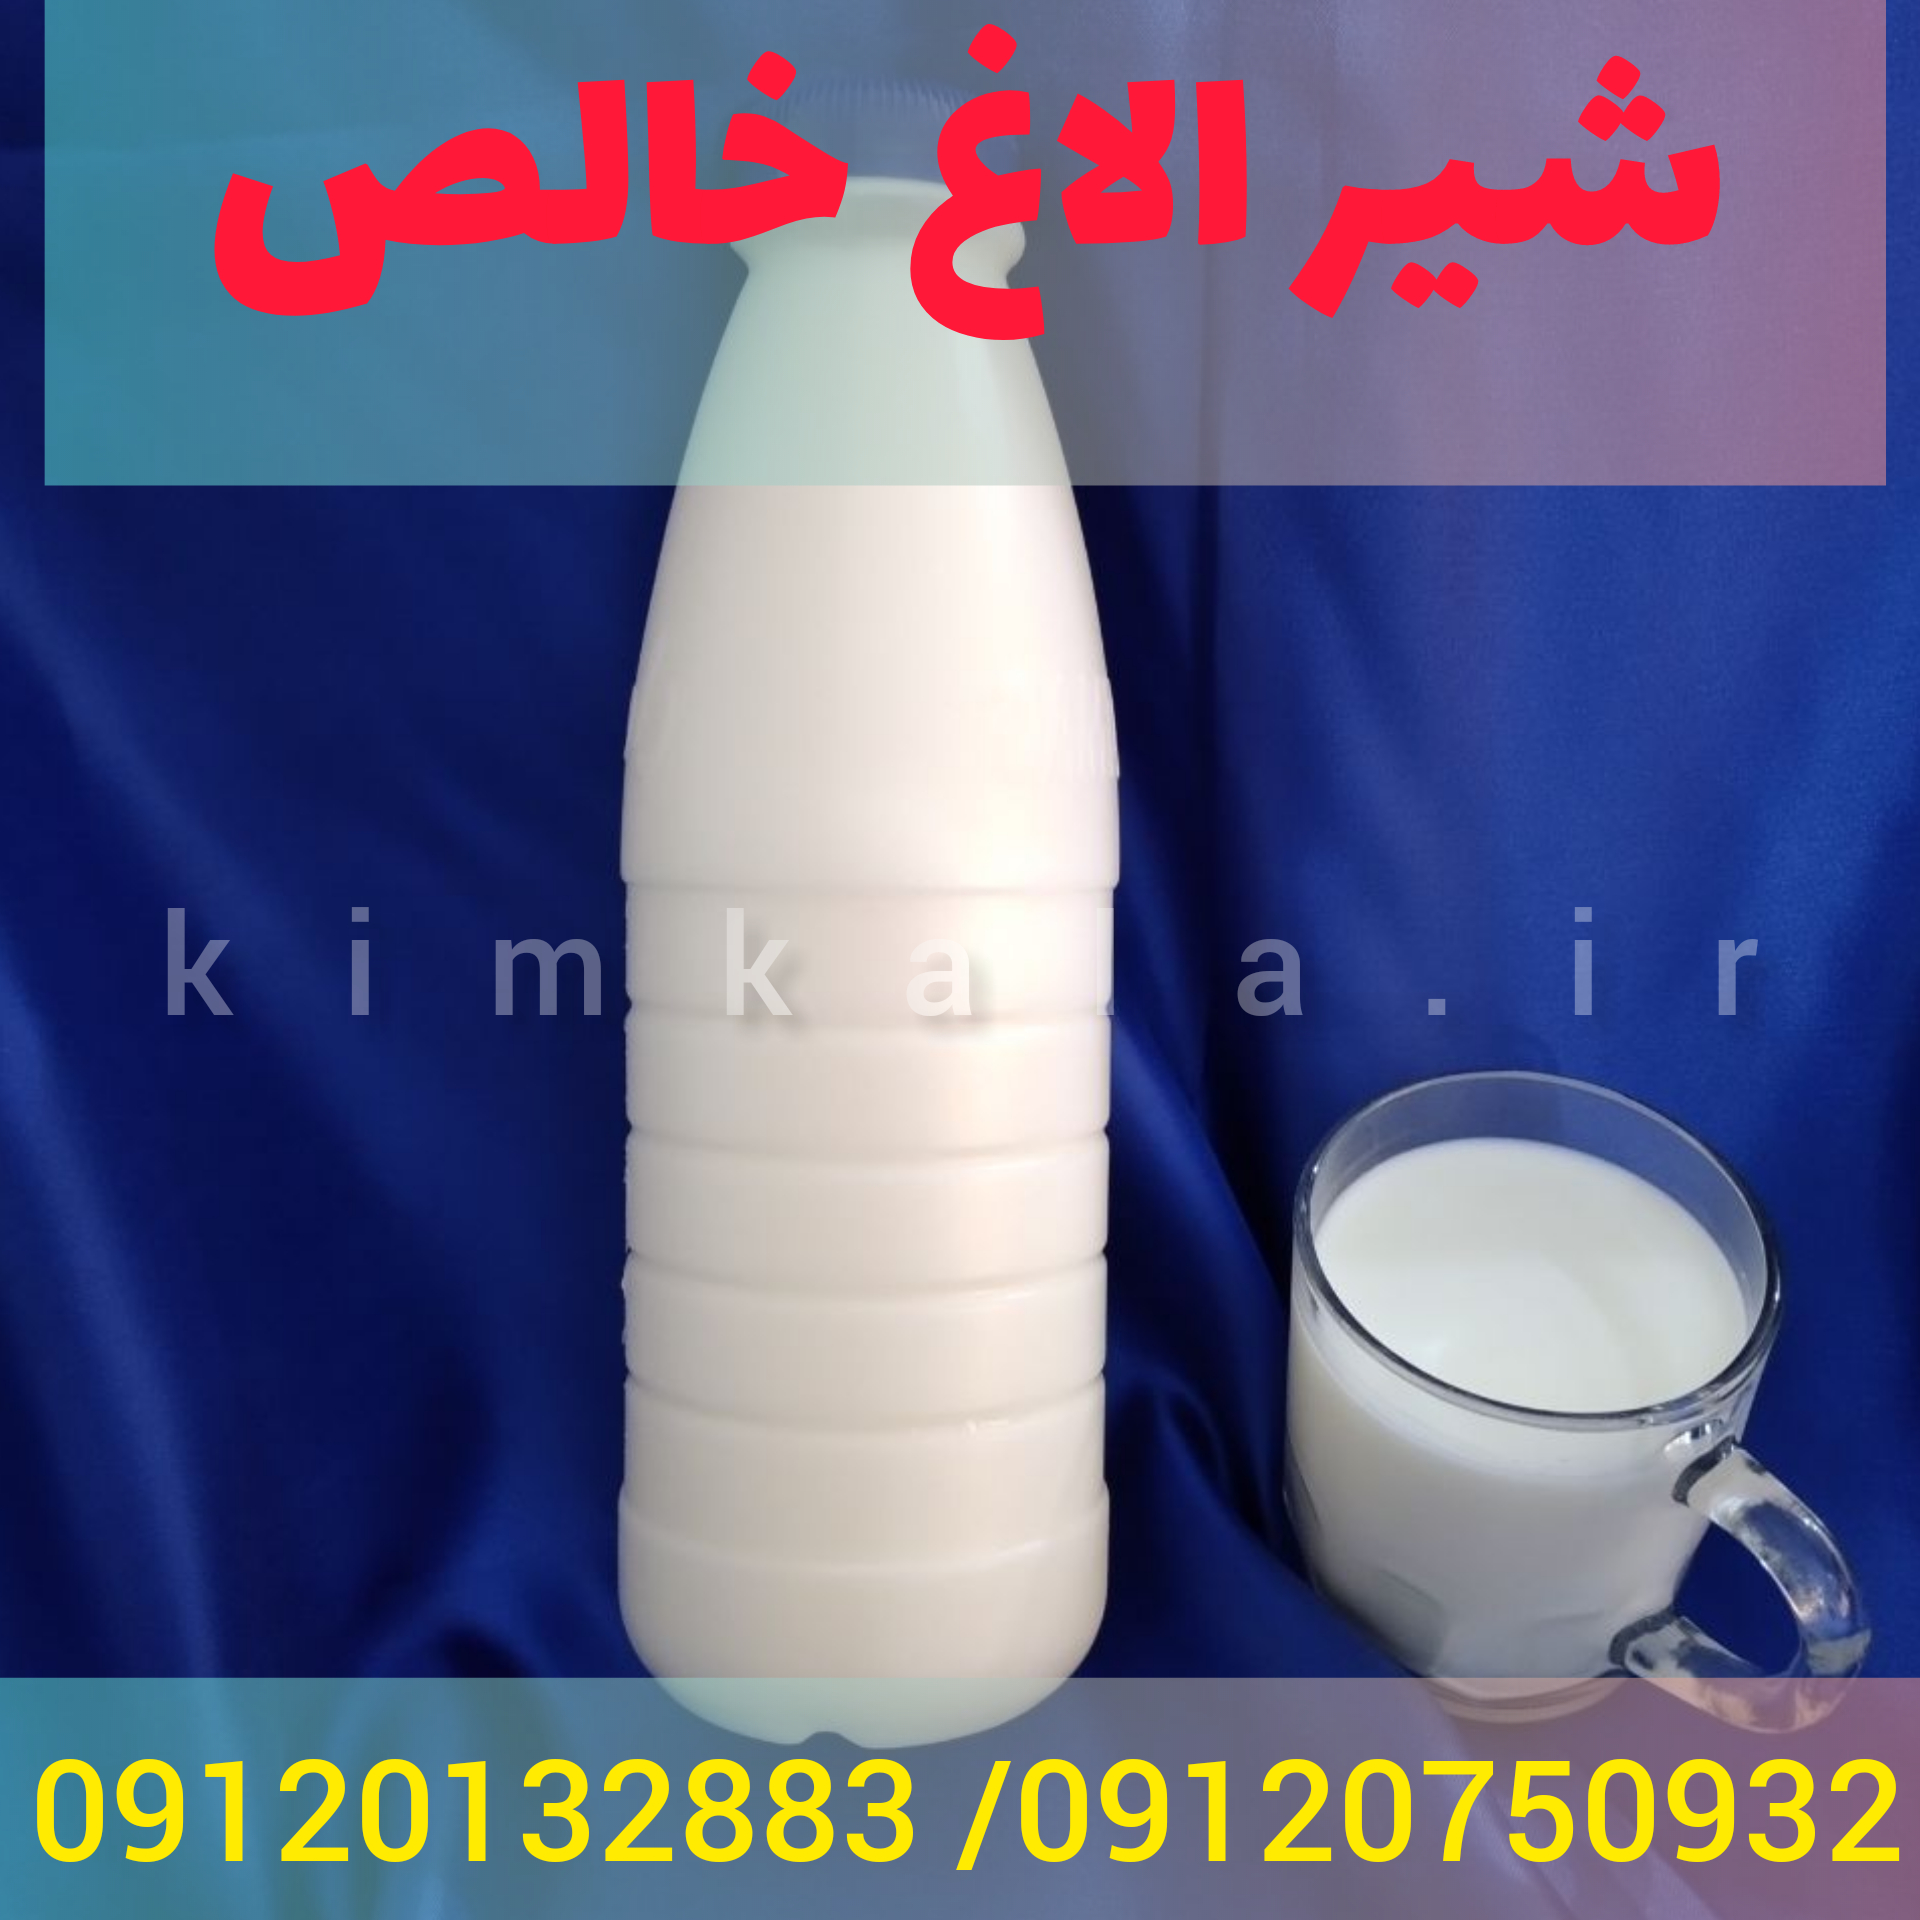 خرید شیر الاغ/09120750932 /قیمت شیر الاغ